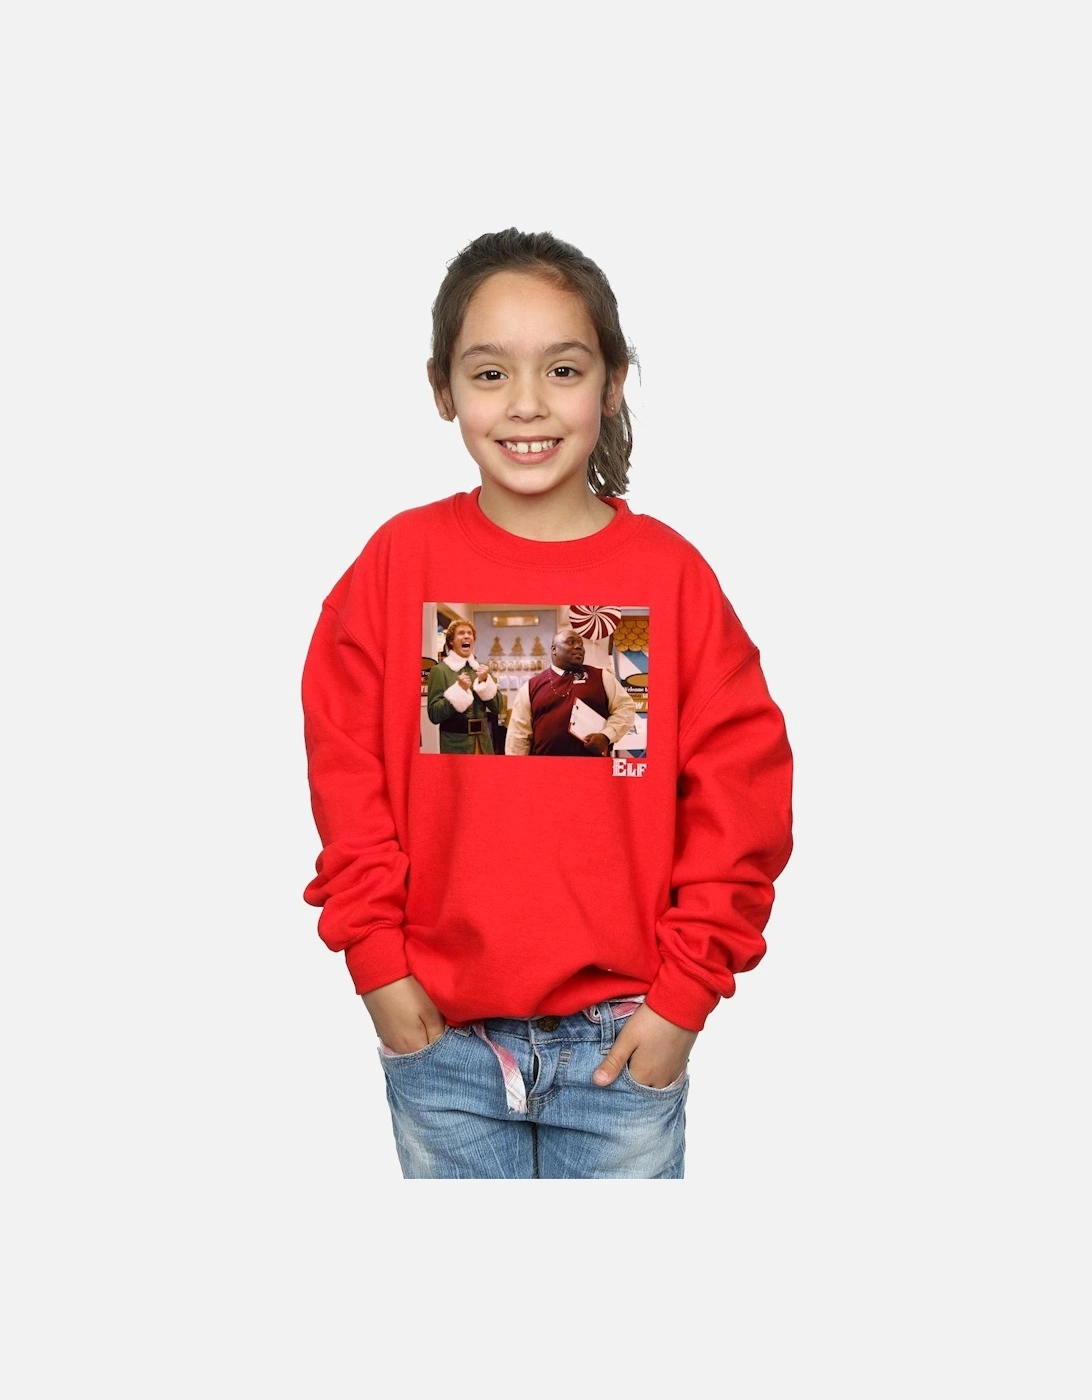 Girls Christmas Store Cheer Sweatshirt